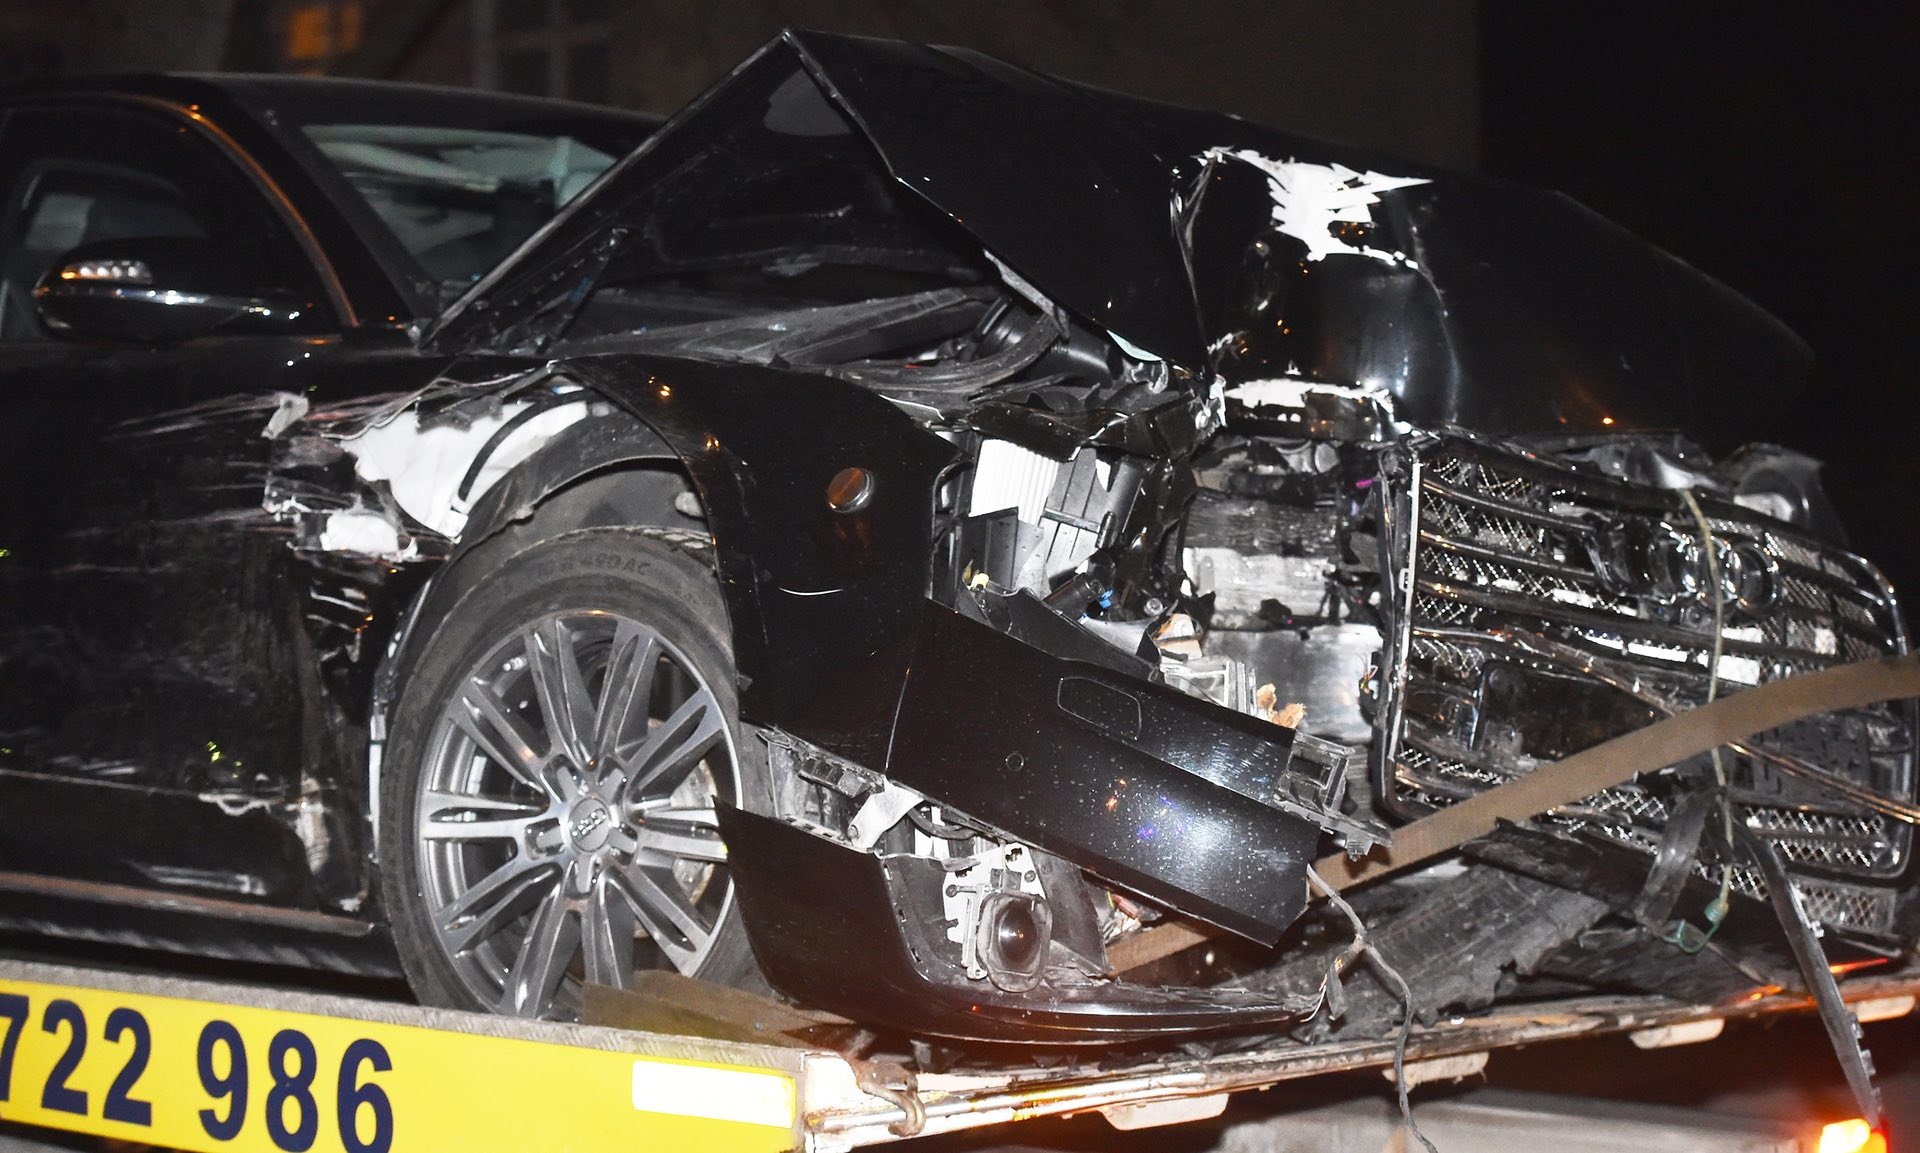 نخست وزیر لهستان در یک حادثه رانندگی مصدوم شد